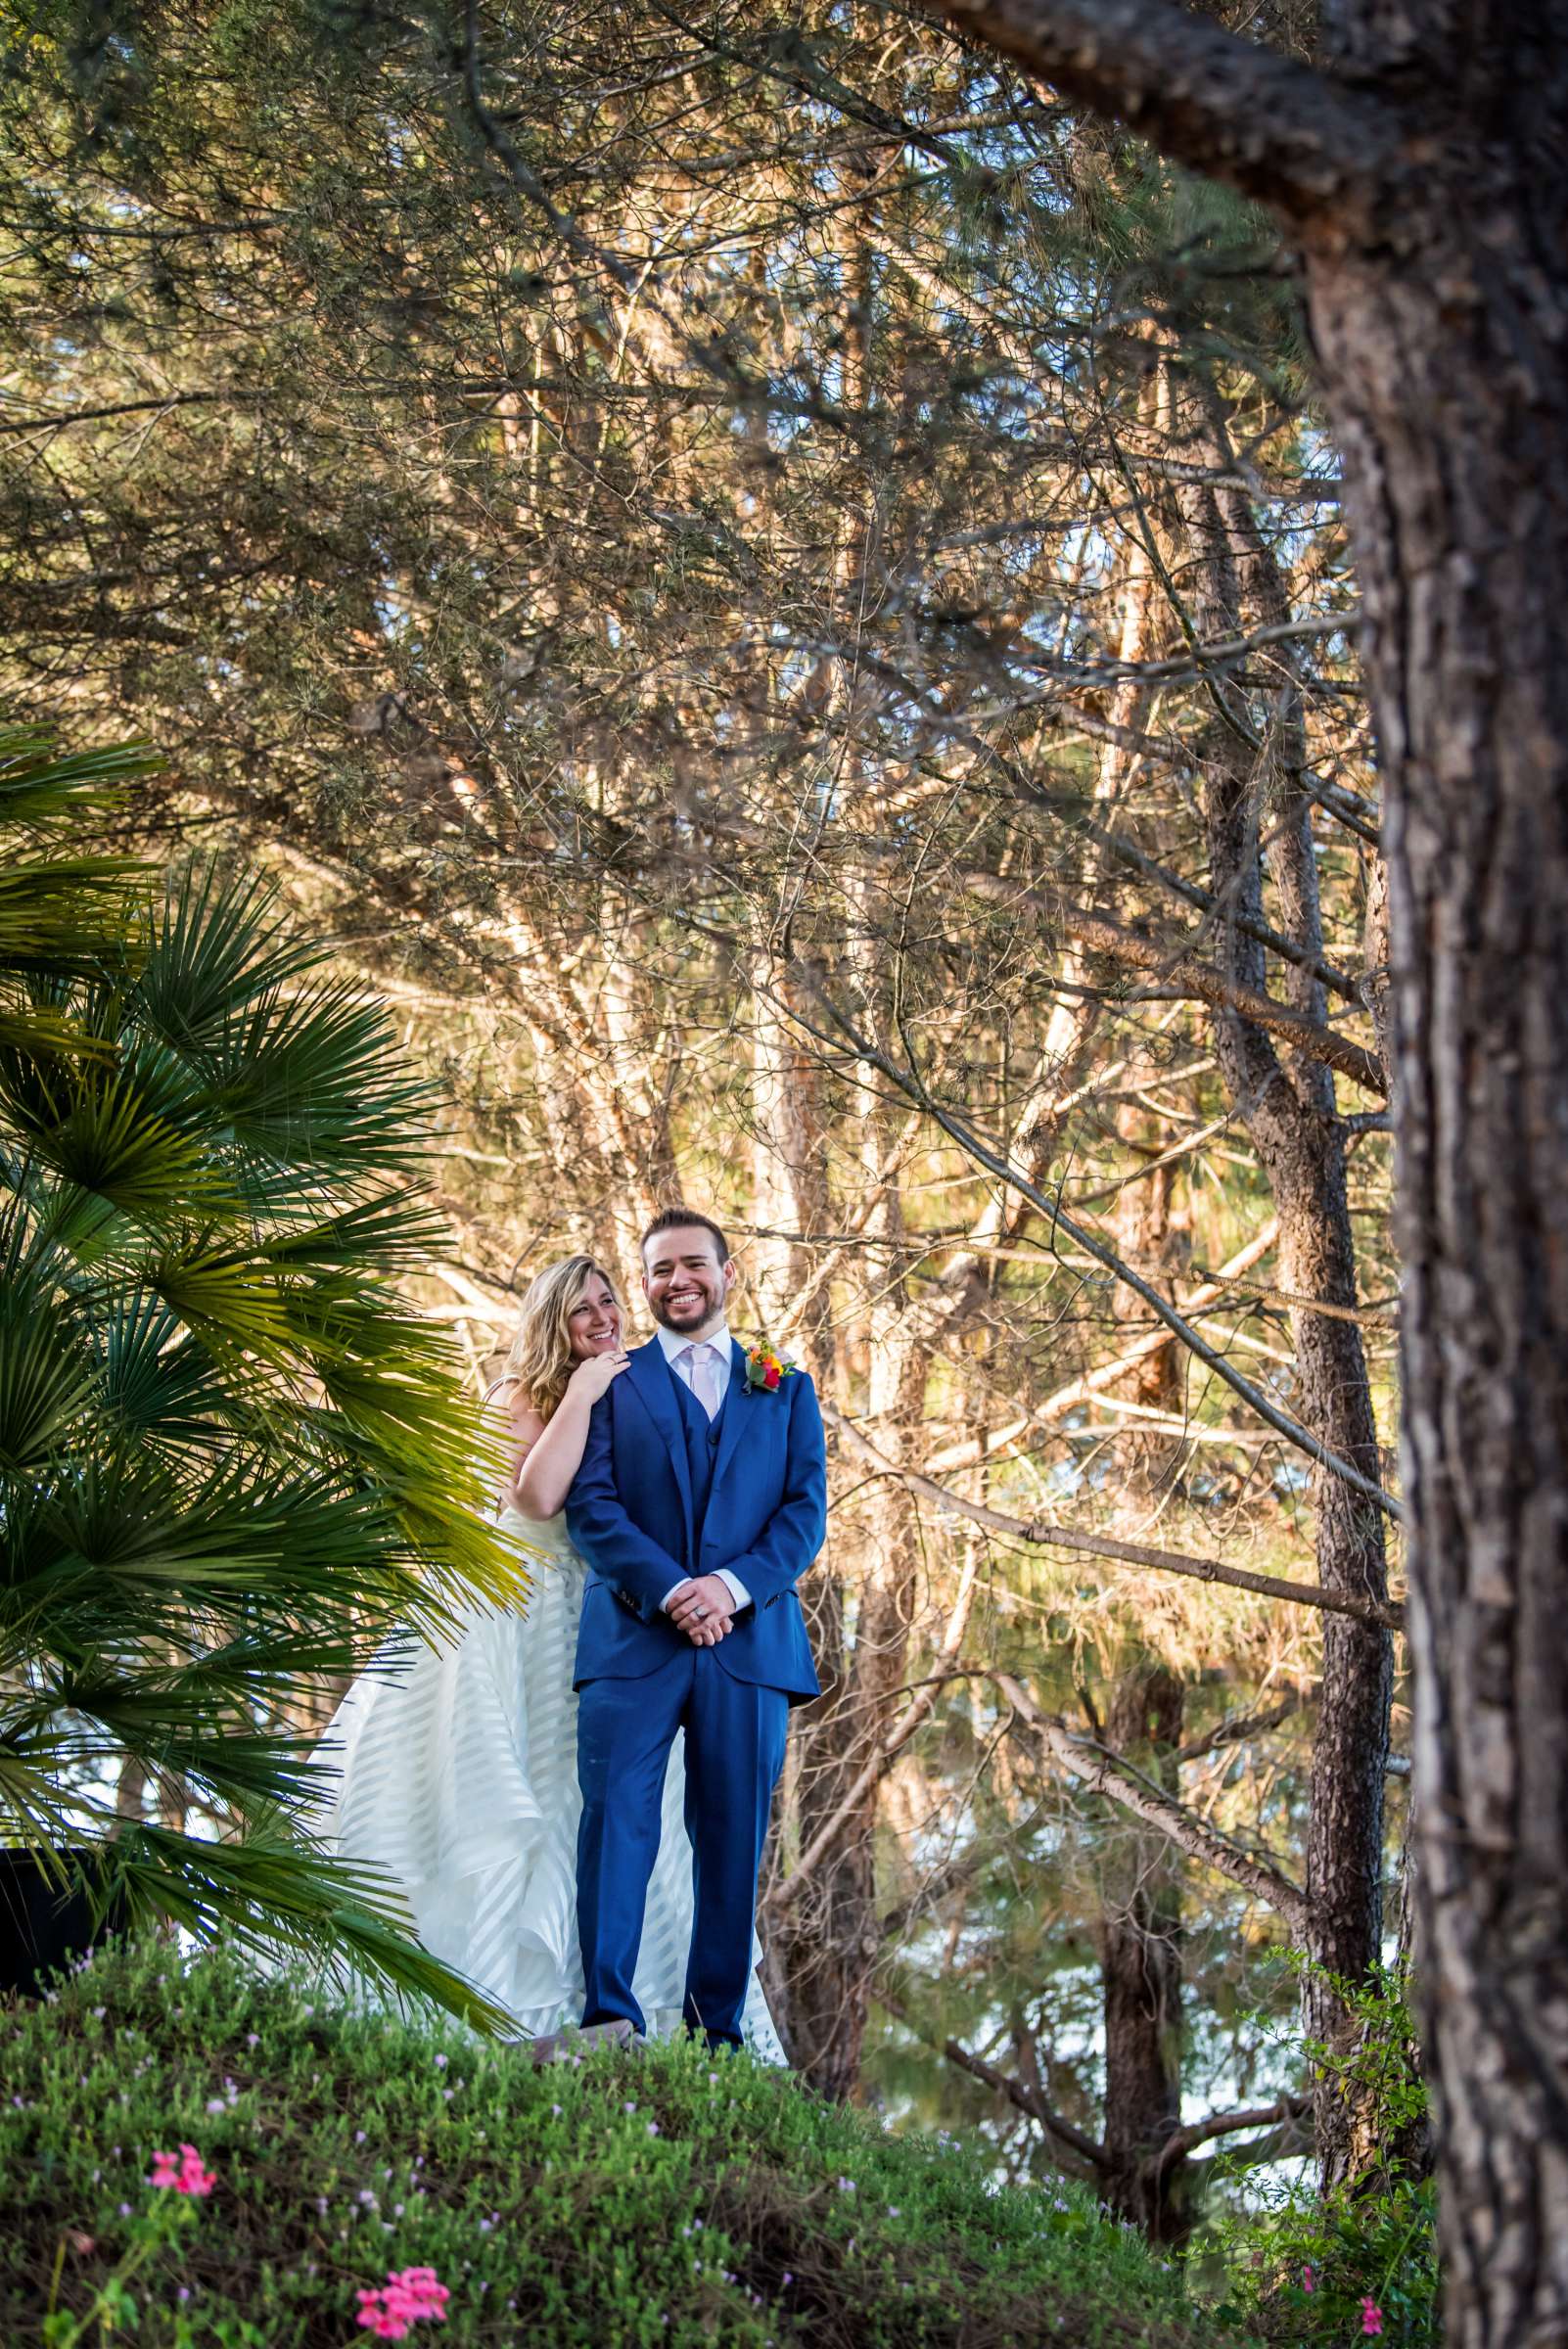 Wedding, Elizabeth and Dustin Wedding Photo #5 by True Photography